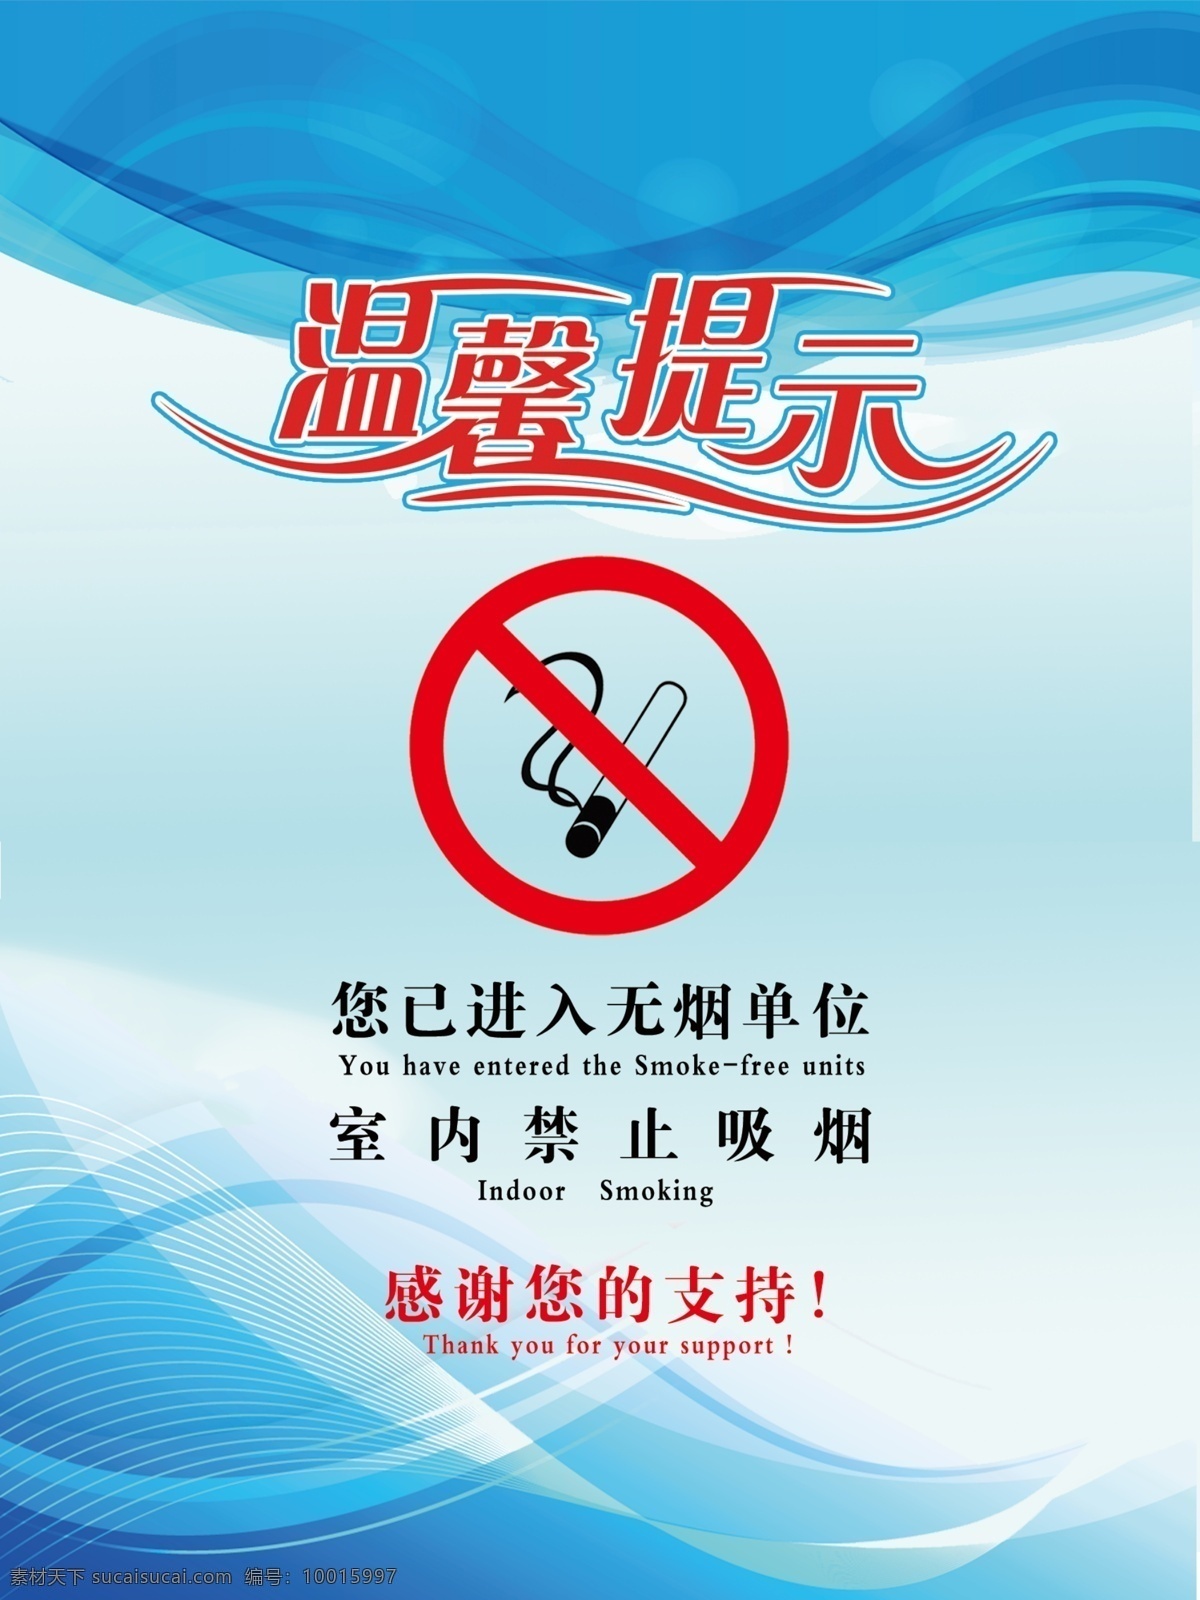 禁止吸烟 无烟单位 温馨提示 单位 提示 分层